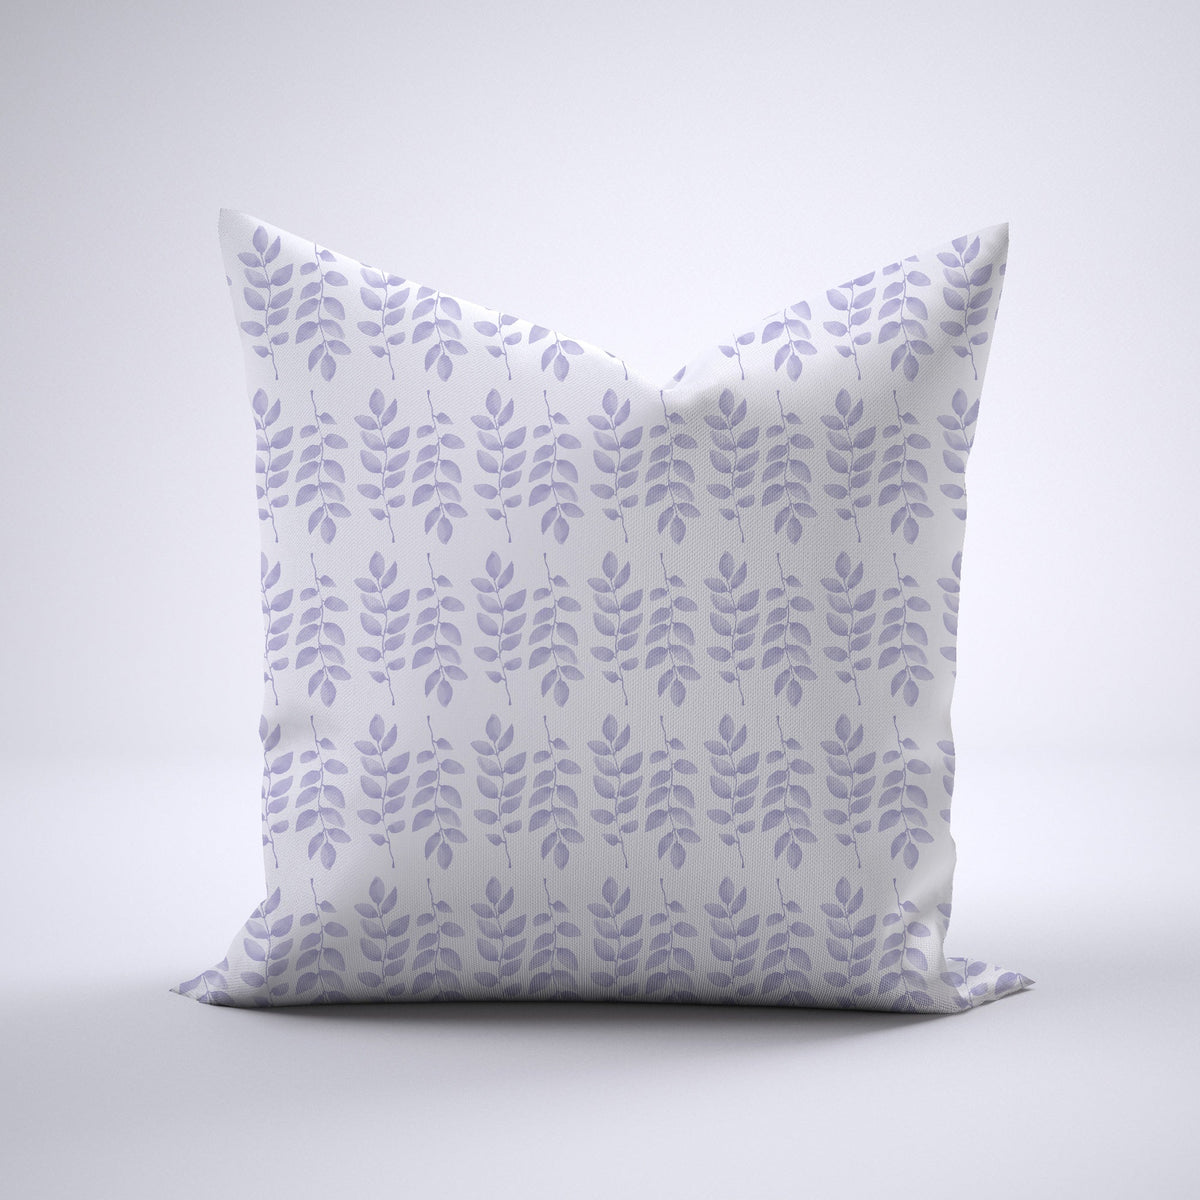 Throw Pillow - Foliage Lavender Bedding, Pillows, Throw Pillows MWW 